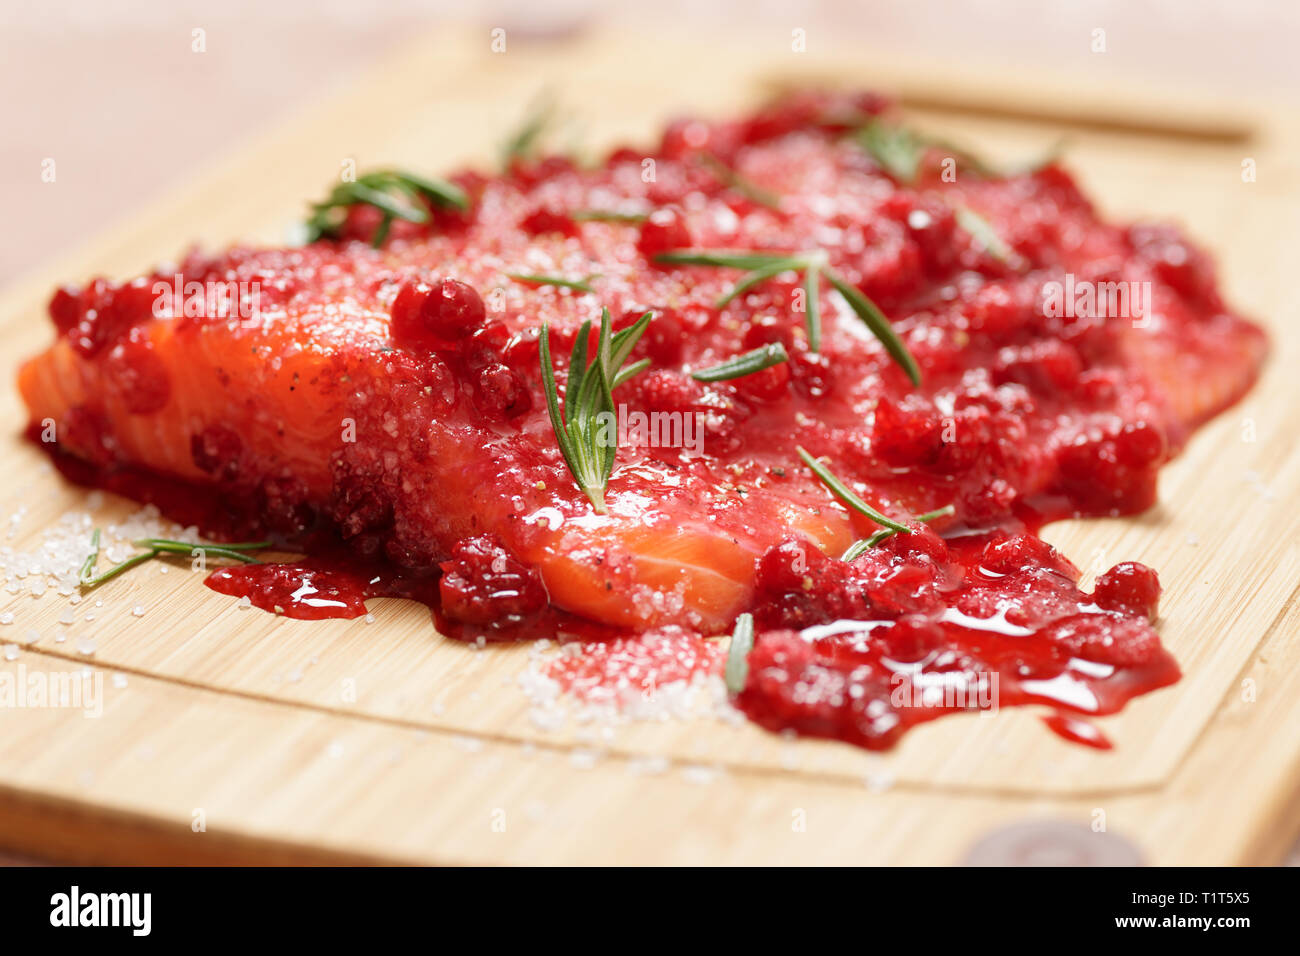 Lachssteak, mariniert in Salz mit Rosmarin und redberries, close-up Stockfoto